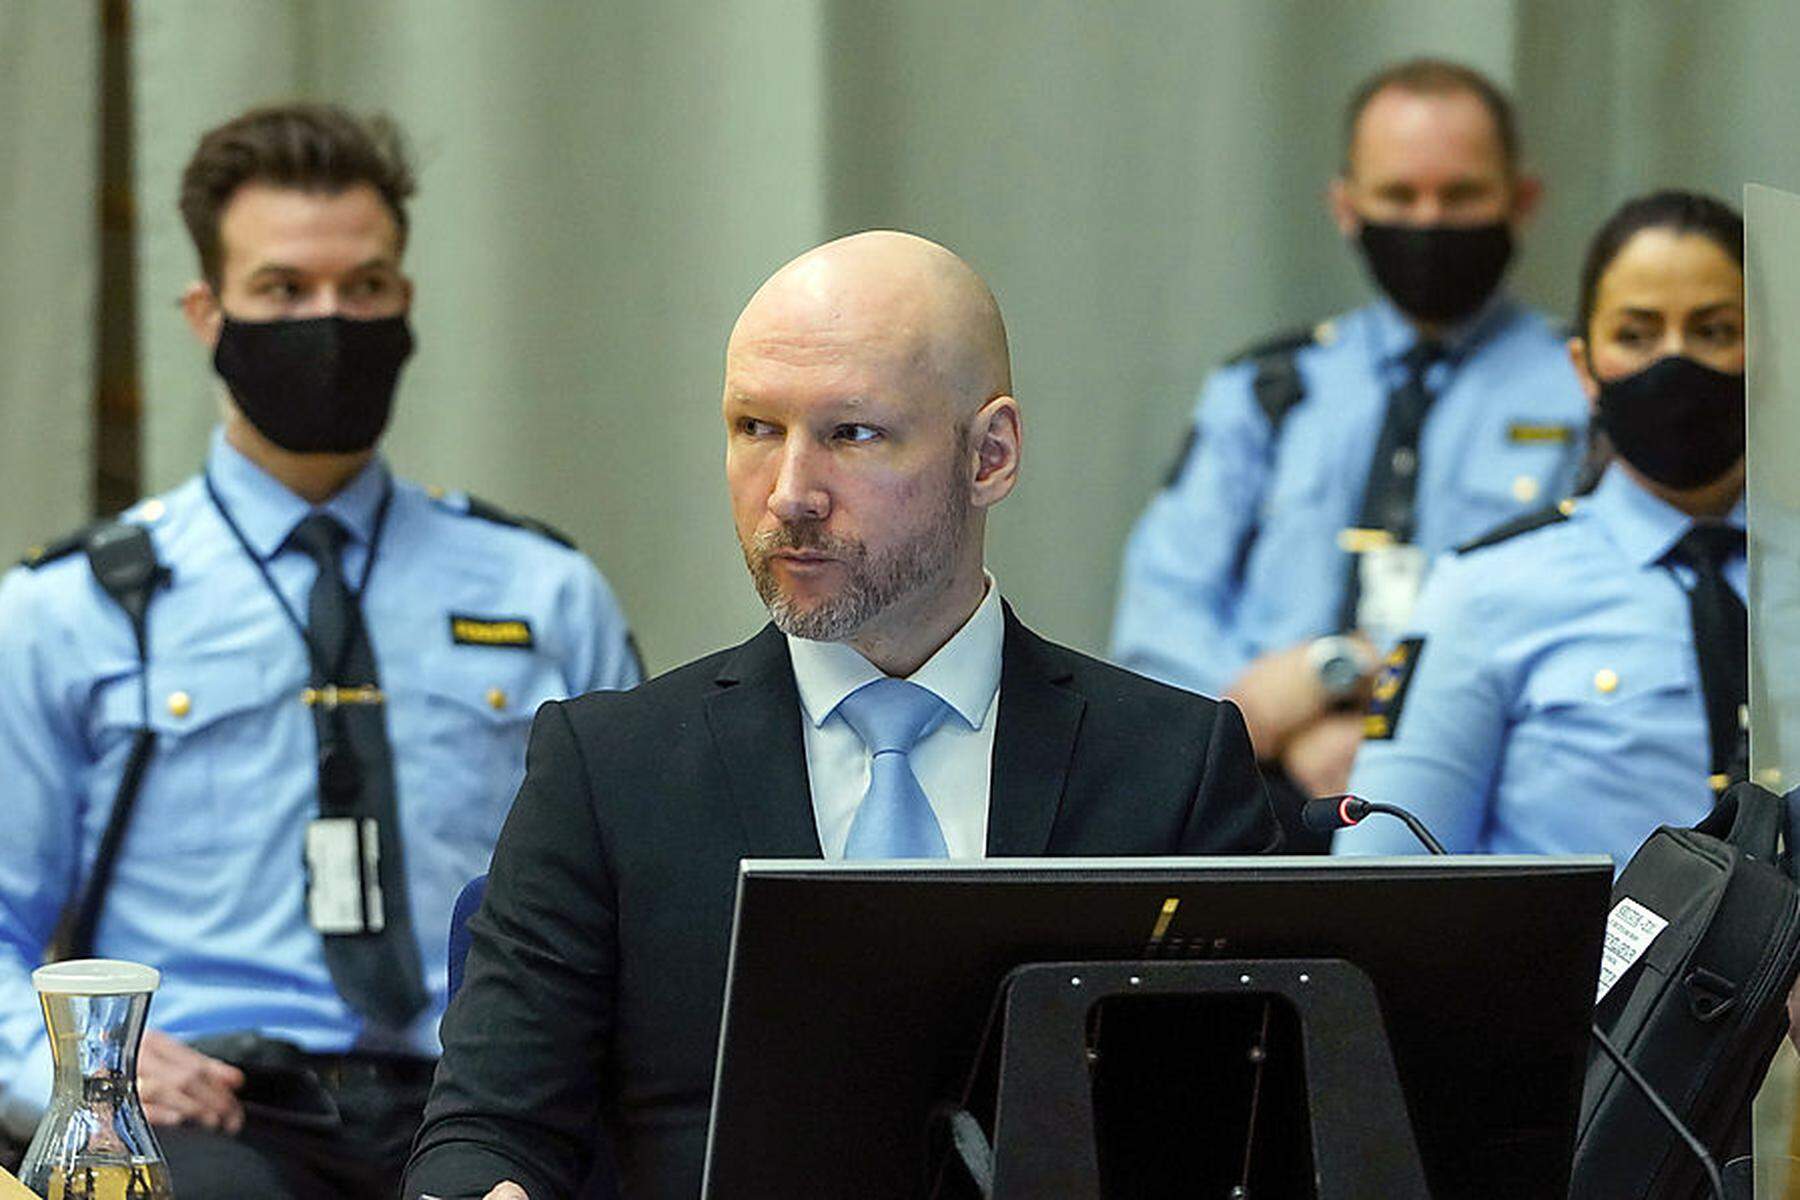 Klagt norwegischen Staat | Utøya-Attentäter Breivik will aus der Isolationshaft 